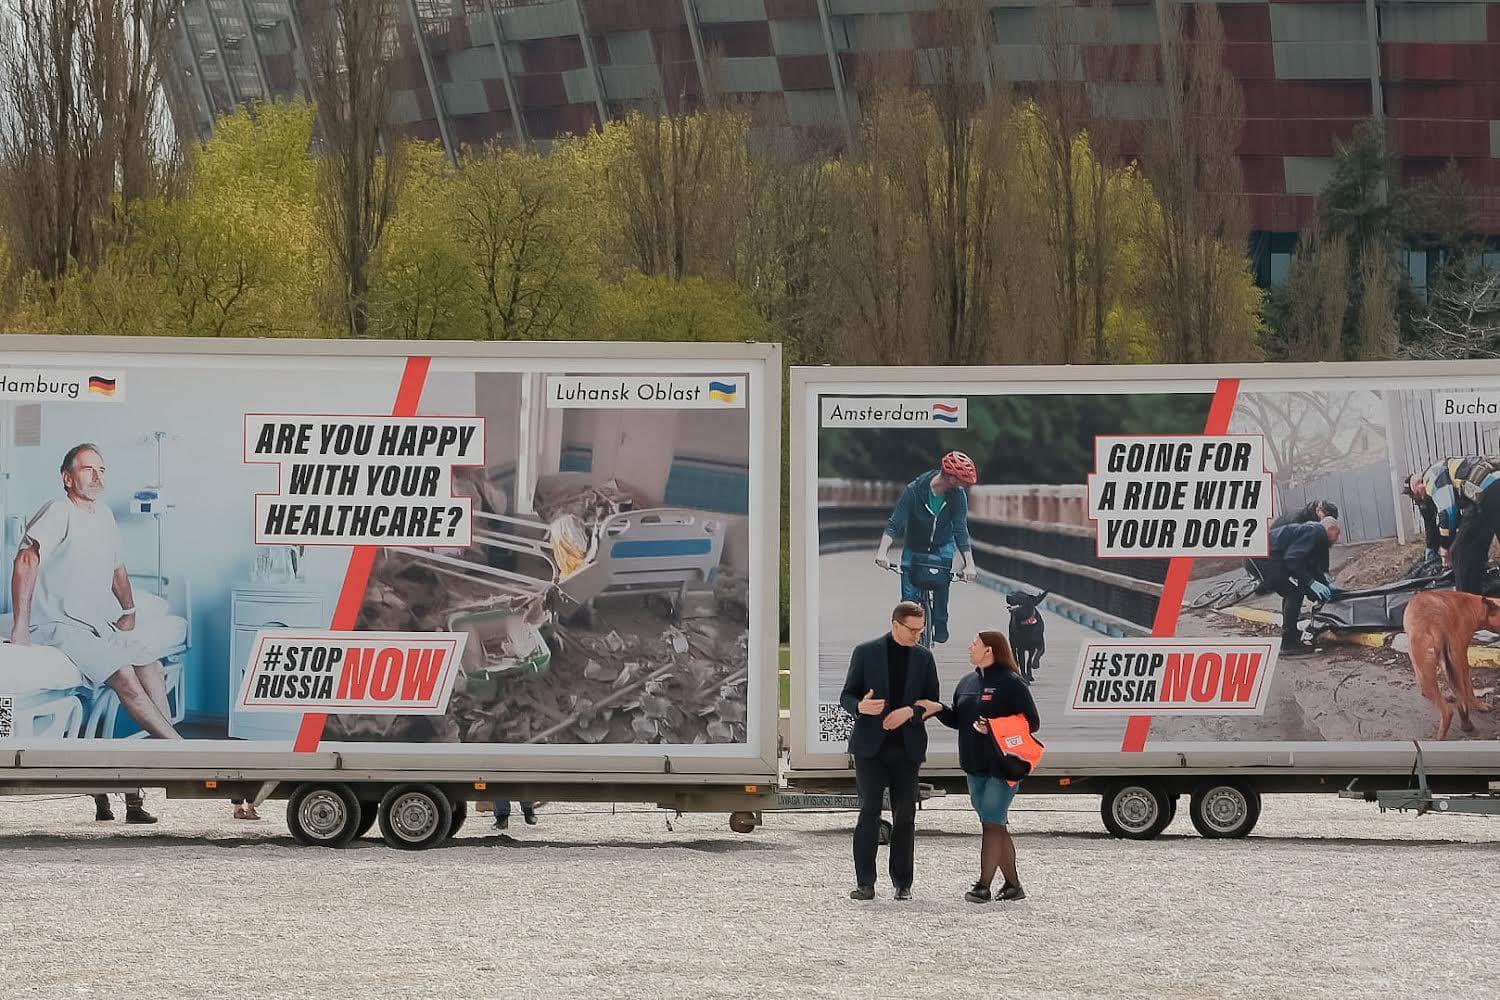 Állítsuk meg Oroszországot most! címmel indít európai plakátkampányt Lengyelország